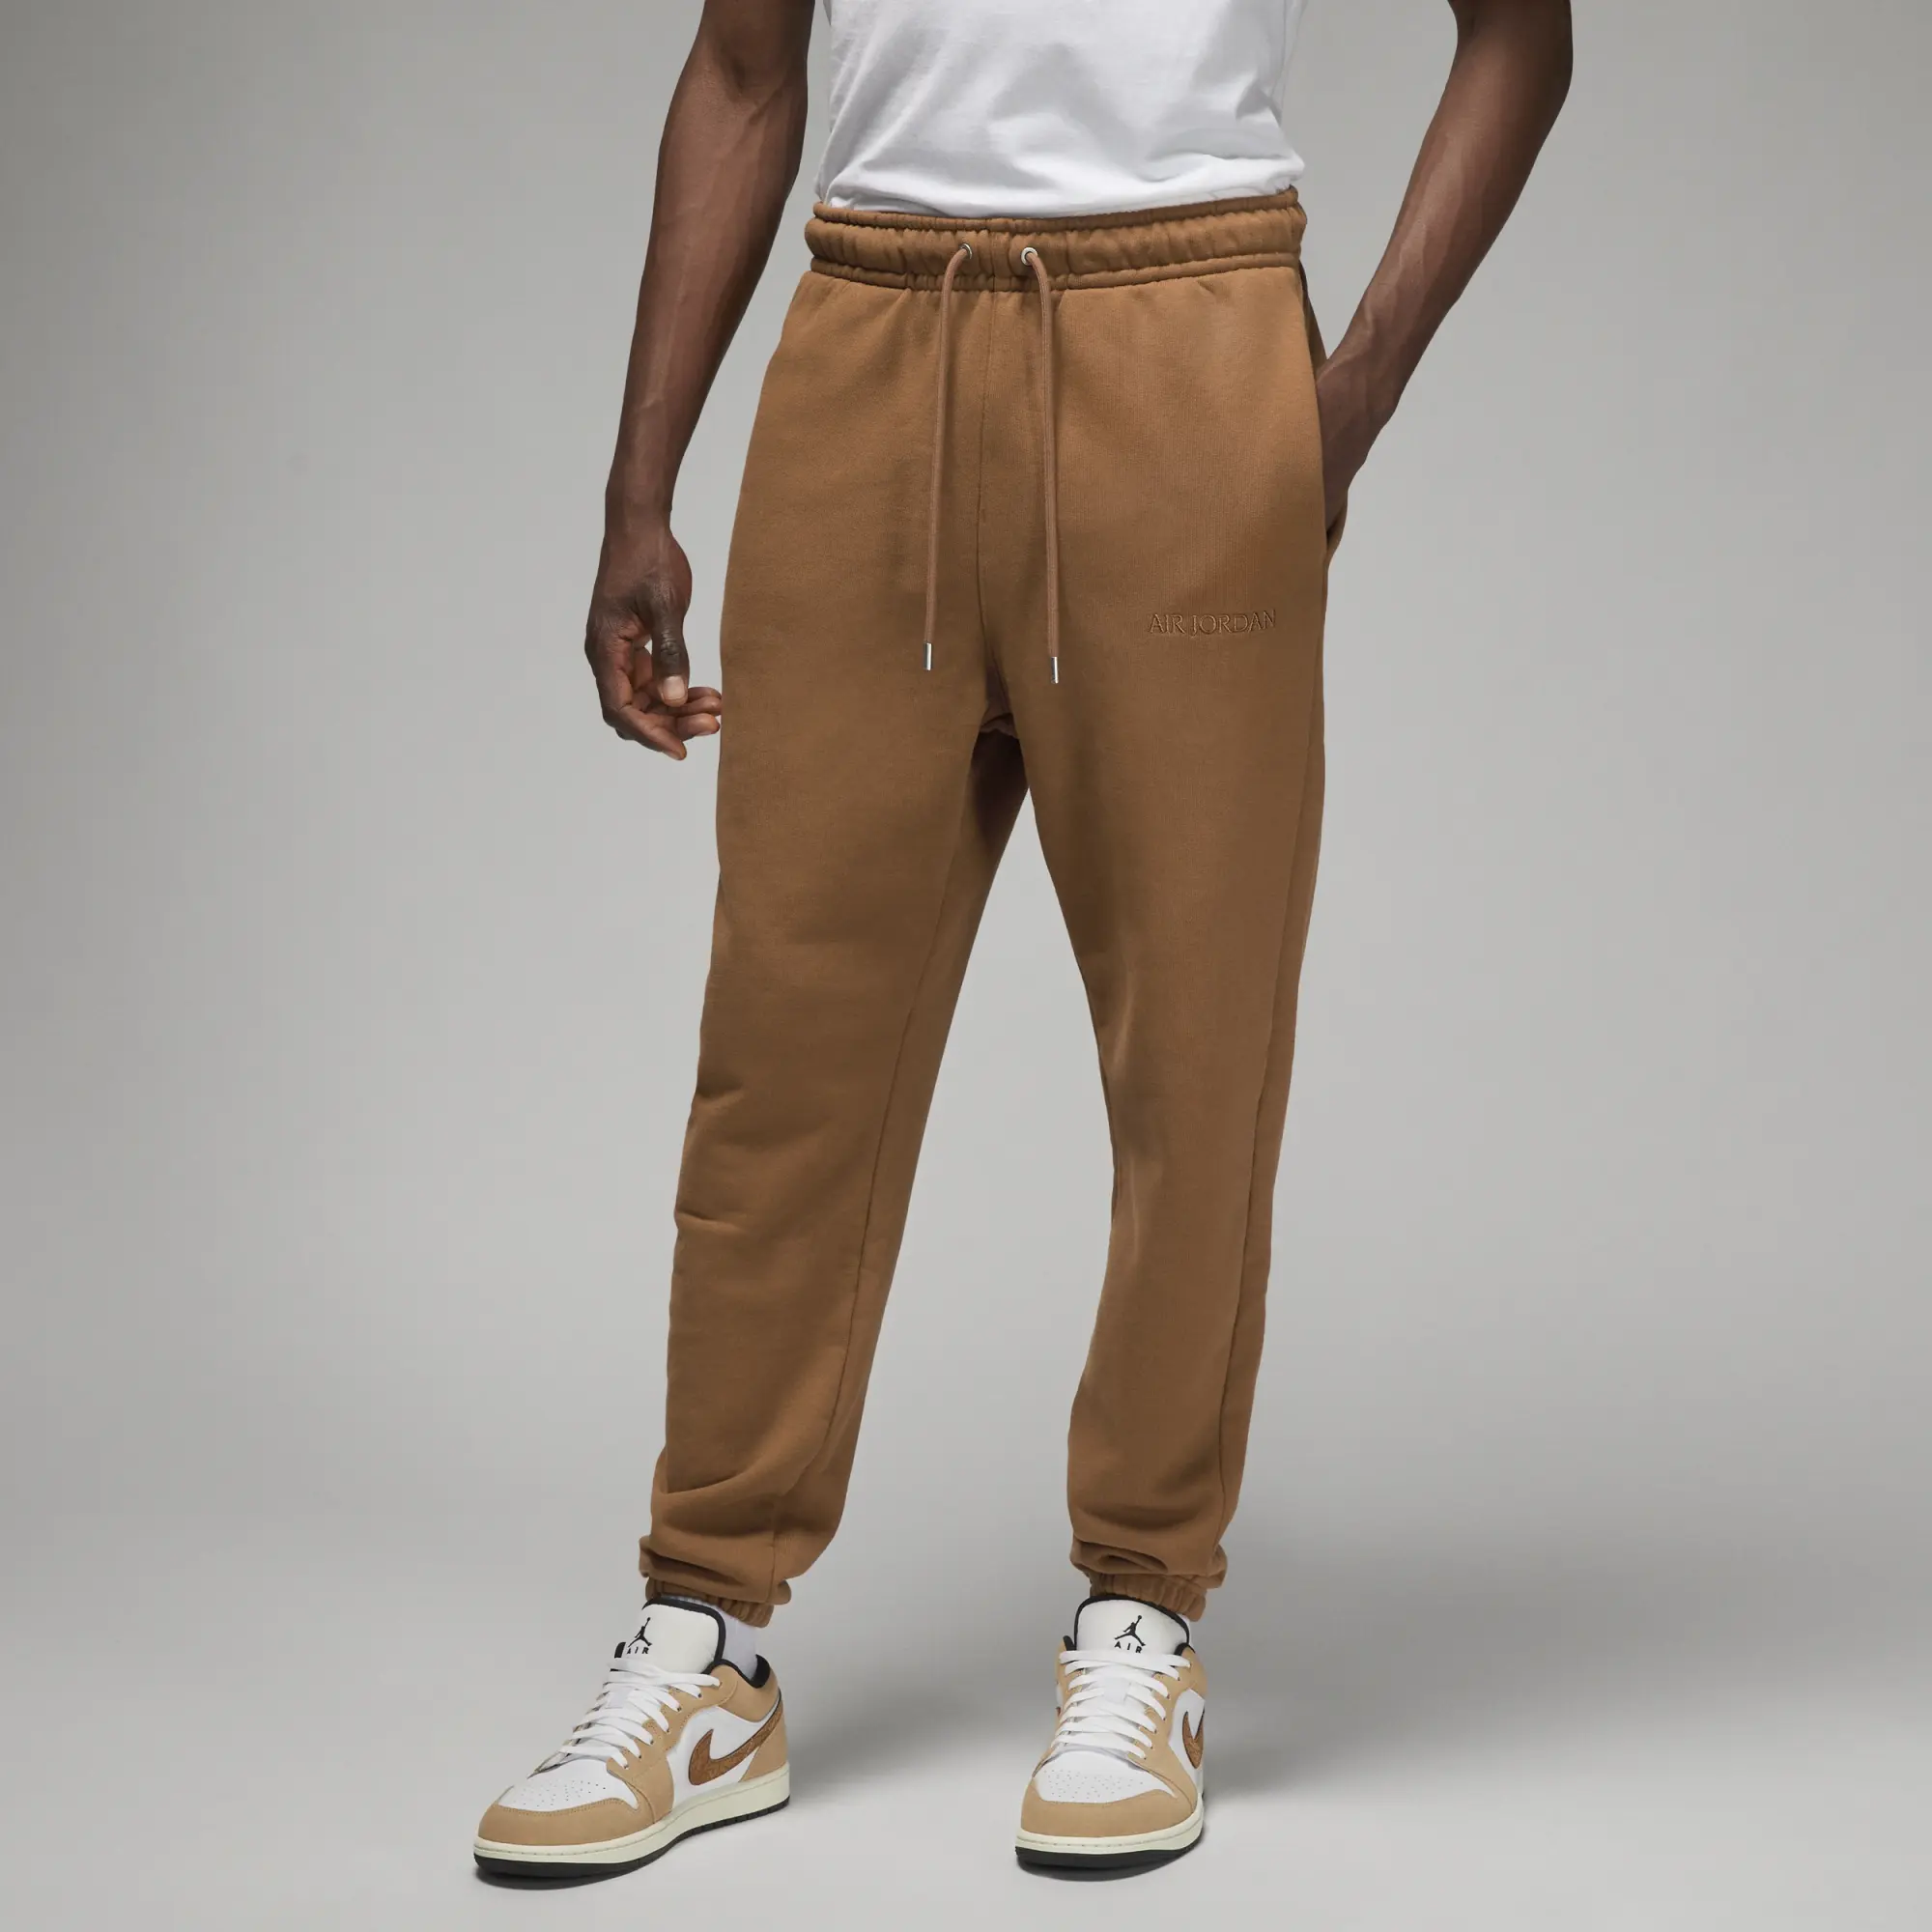 Nike Jordan Jordan Air Jordan Wordmark Fleece Pant Men Sweatpants Brown ...